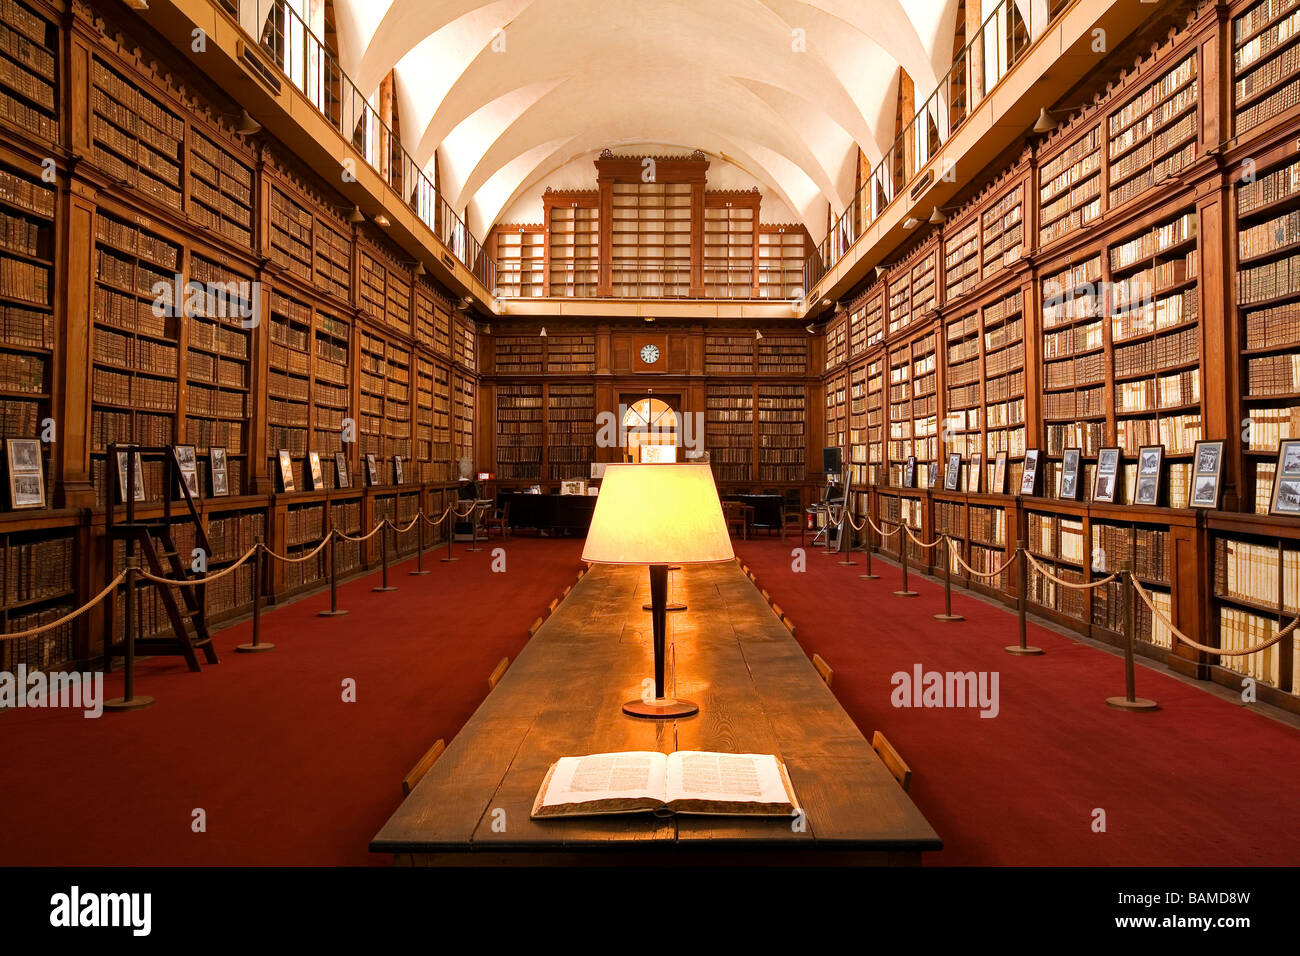 France, Corse du Sud, Ajaccio, Fesch Library Stock Photo - Alamy